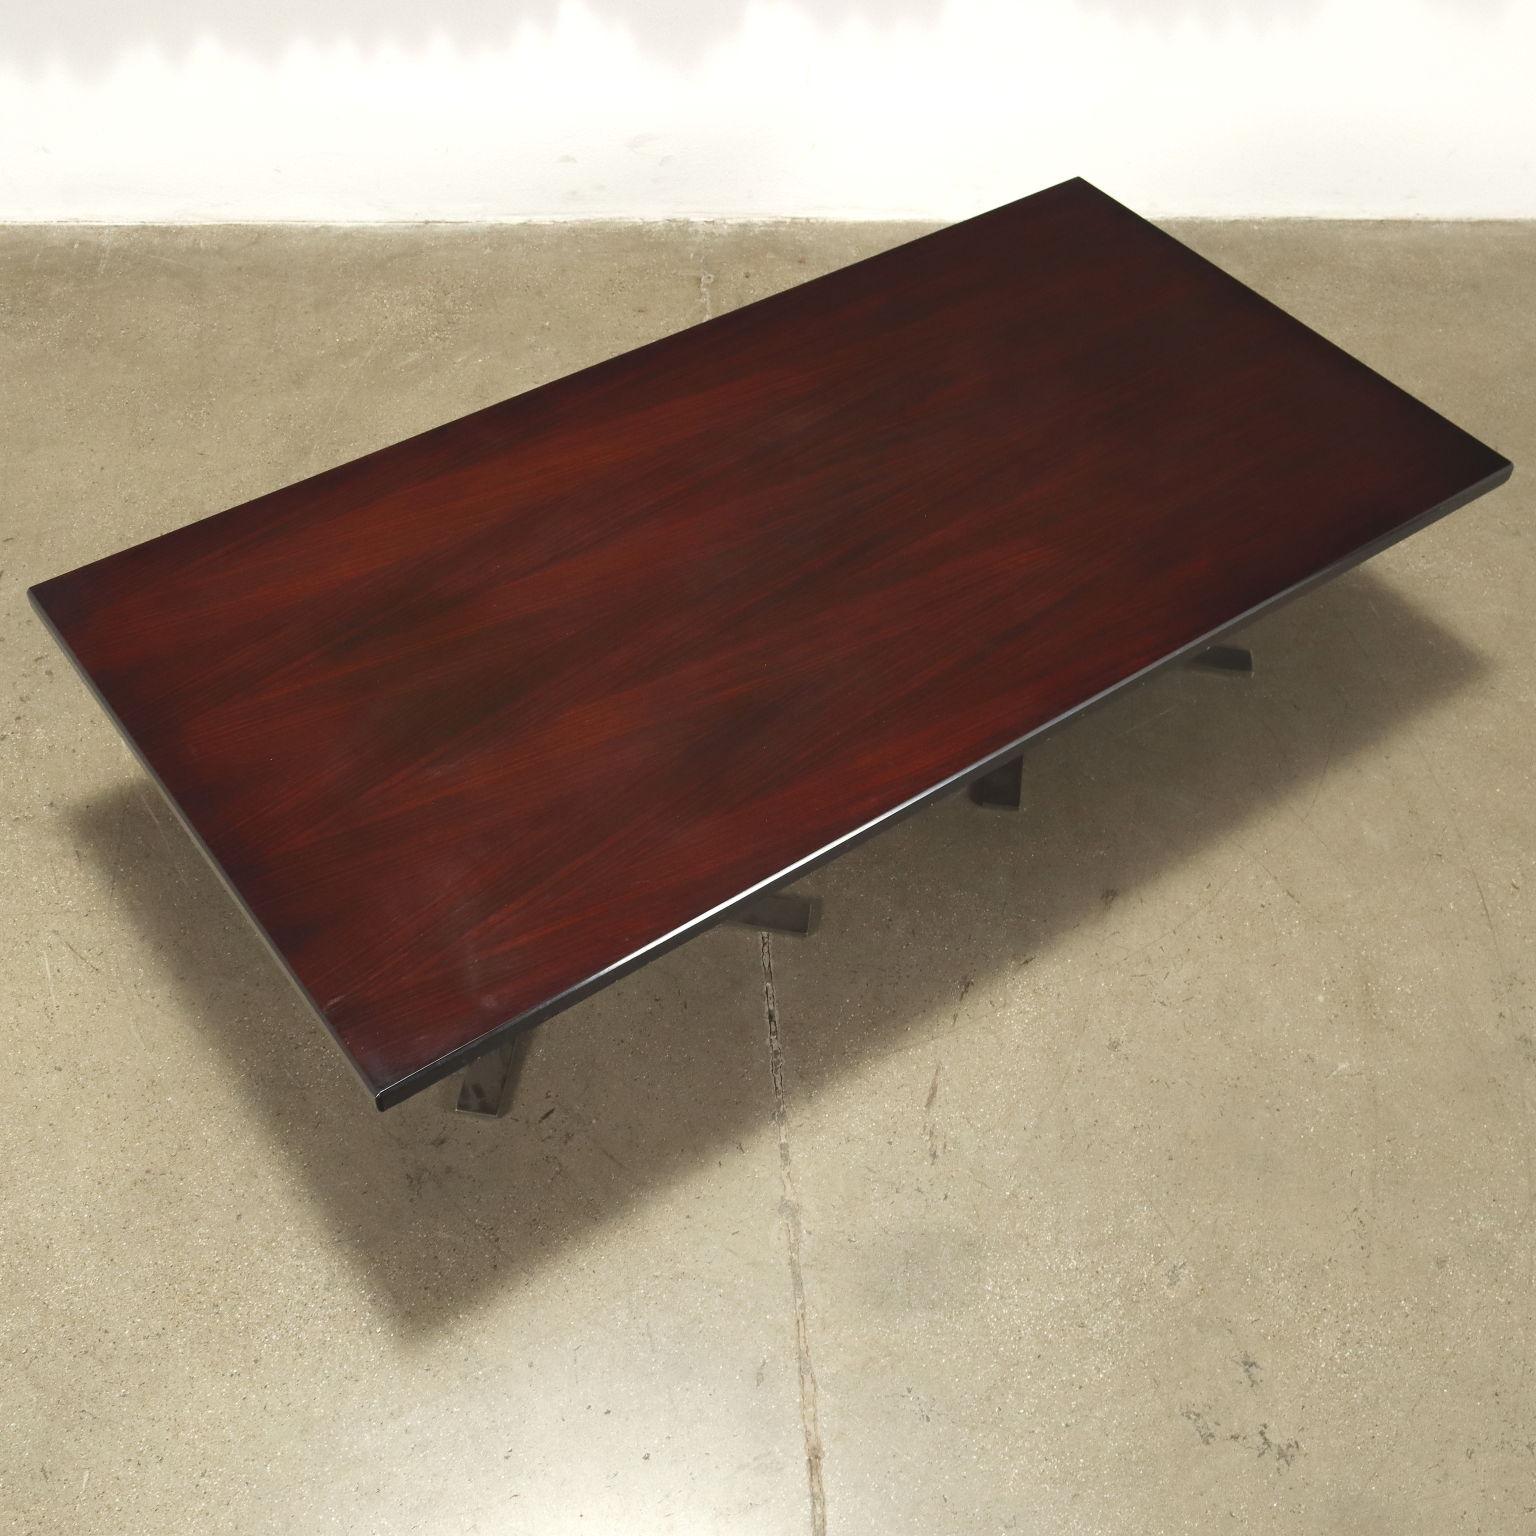 Tavolino da centro; legno impiallacciato legno esotico tinto, base in metallo cromato. Buone condizioni.